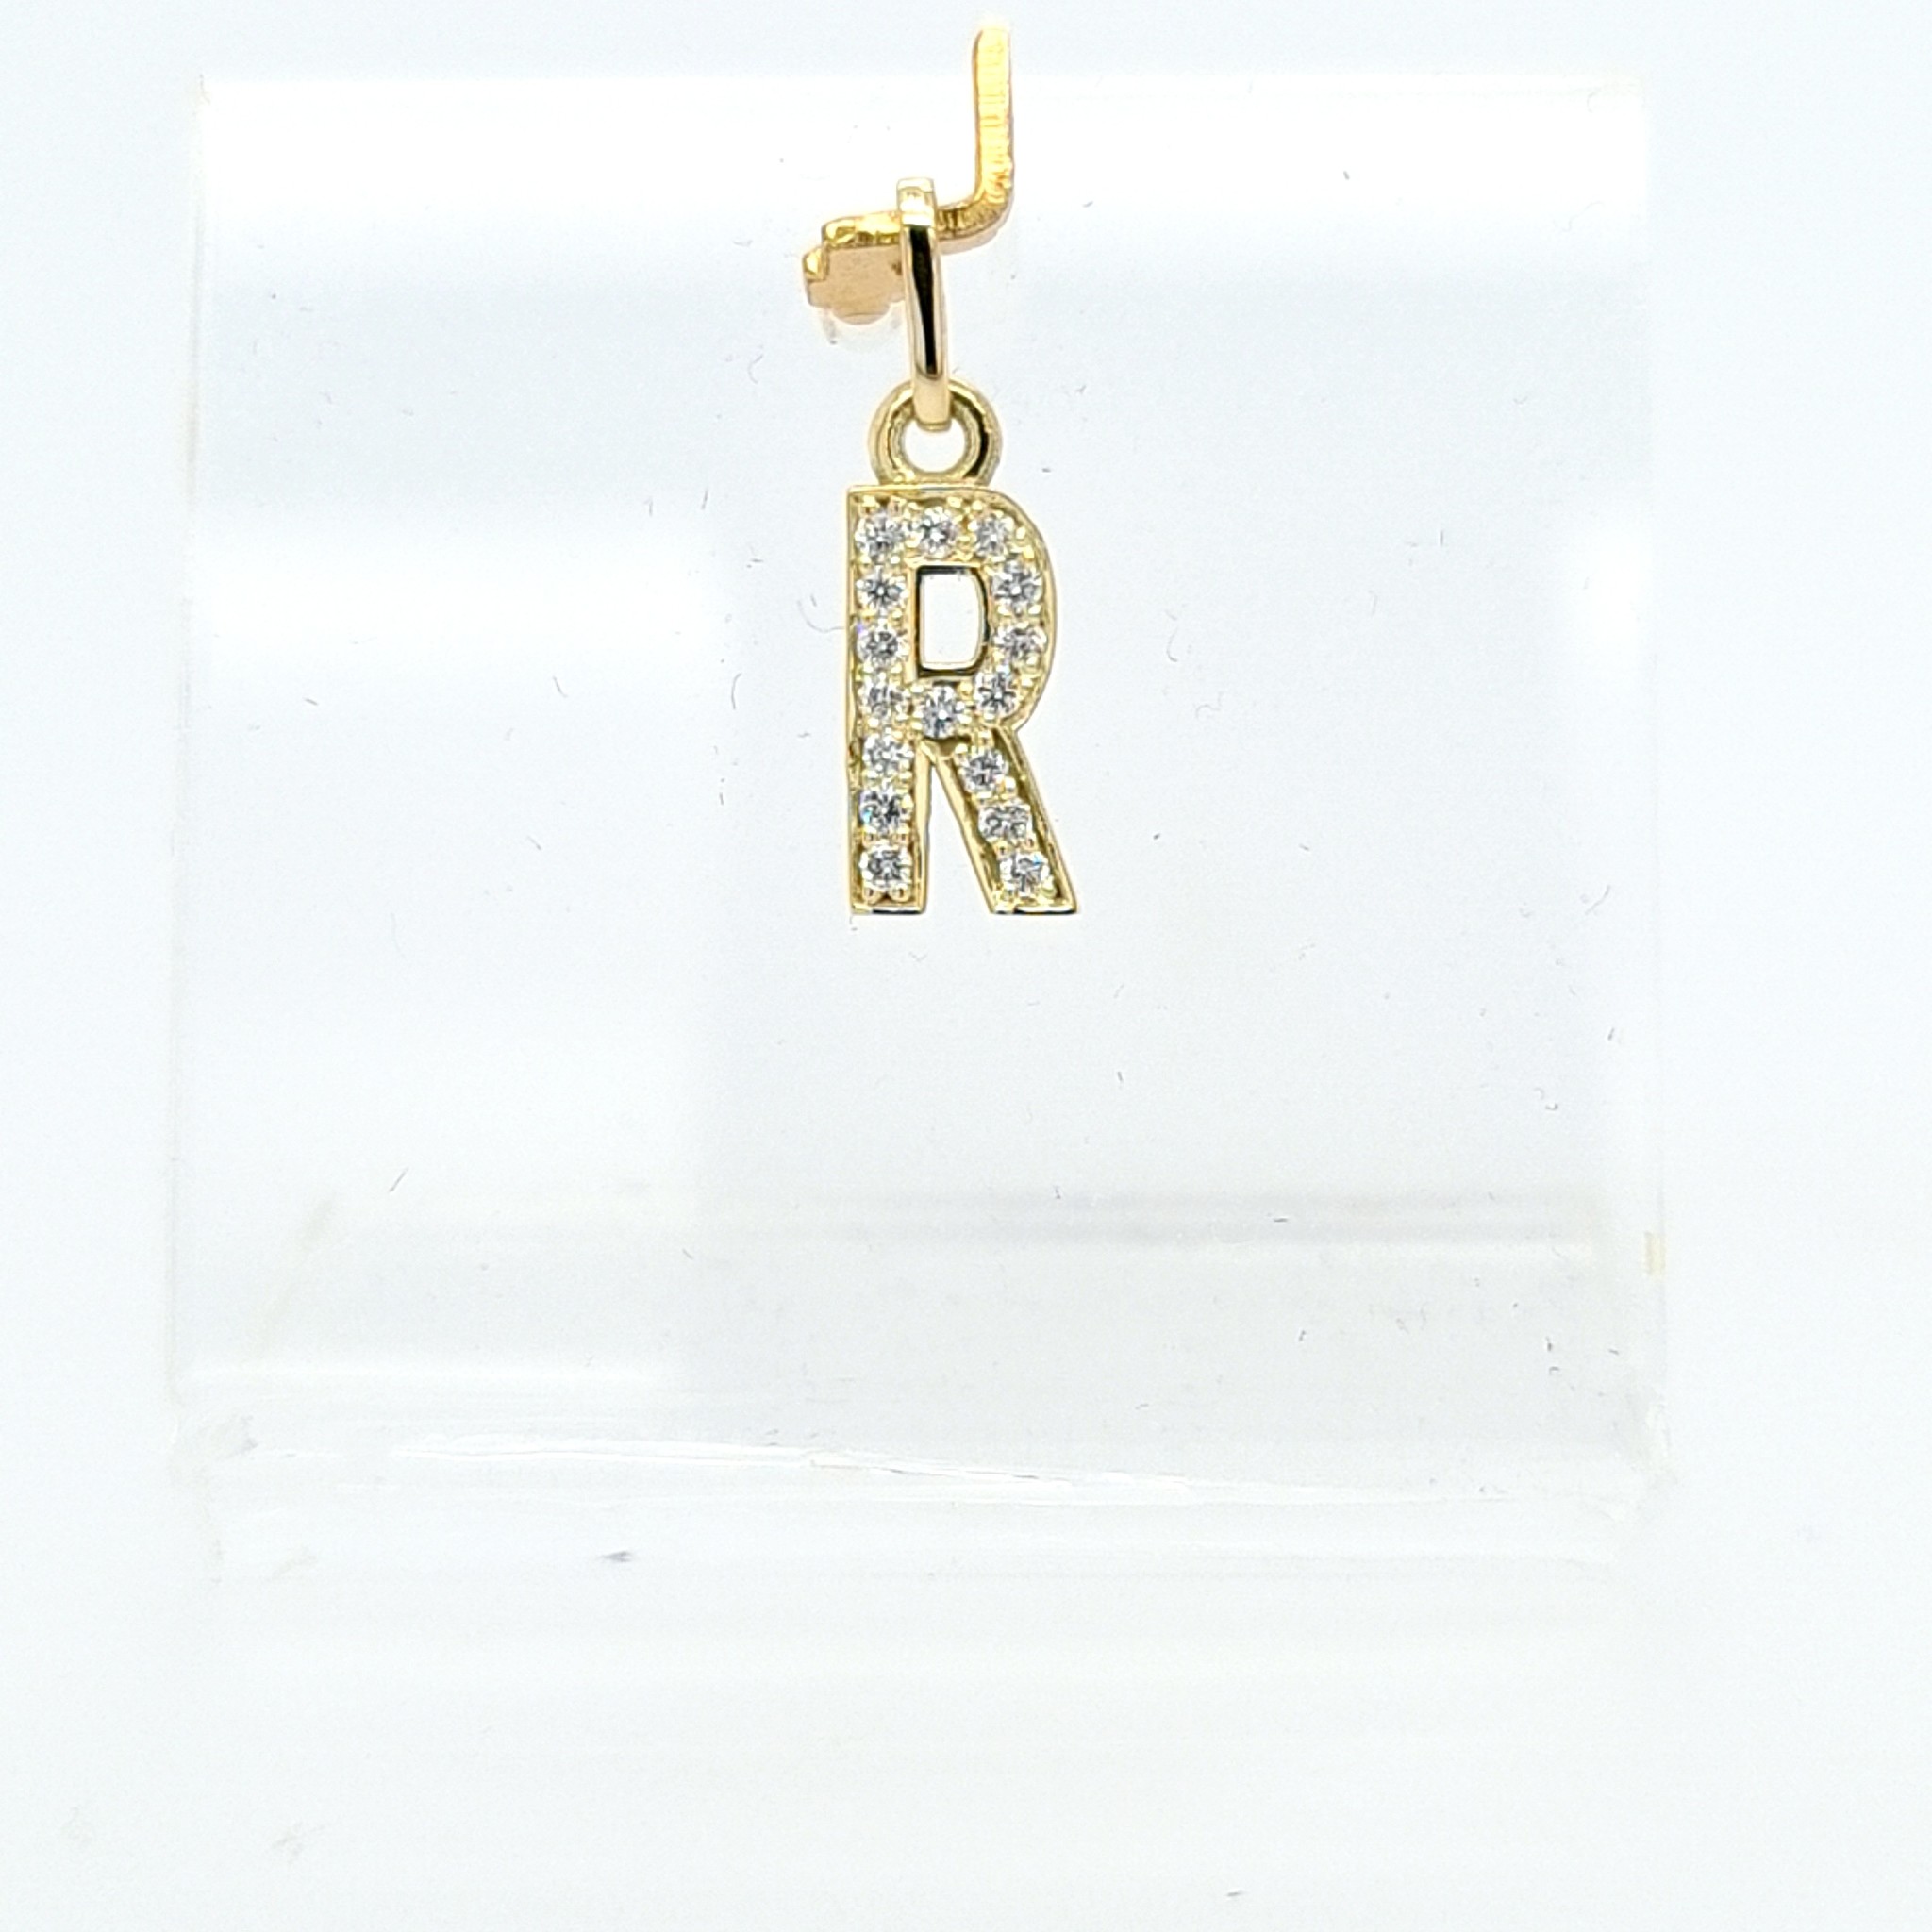 New 14 karaat geel gouden R letter hanger met 0.16 krt briljanten 1.3 cm totaal lengte, gewicht gram - Inkoop & verkoop goud, zilver, juwelen, horloges 1946